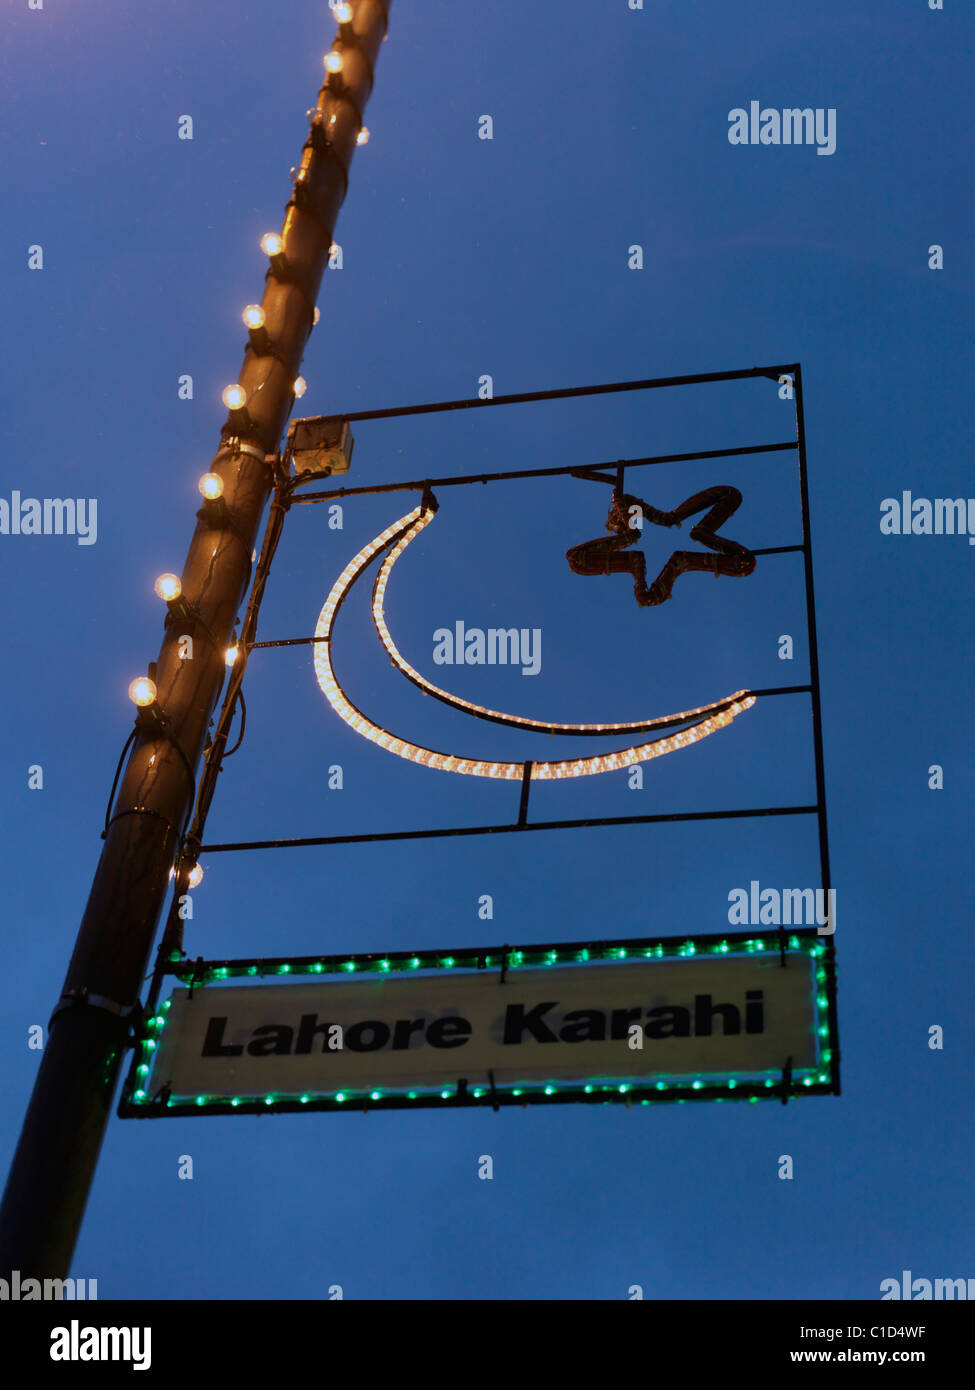 Londres Inglaterra Tooting Eid luces Lampost Foto de stock